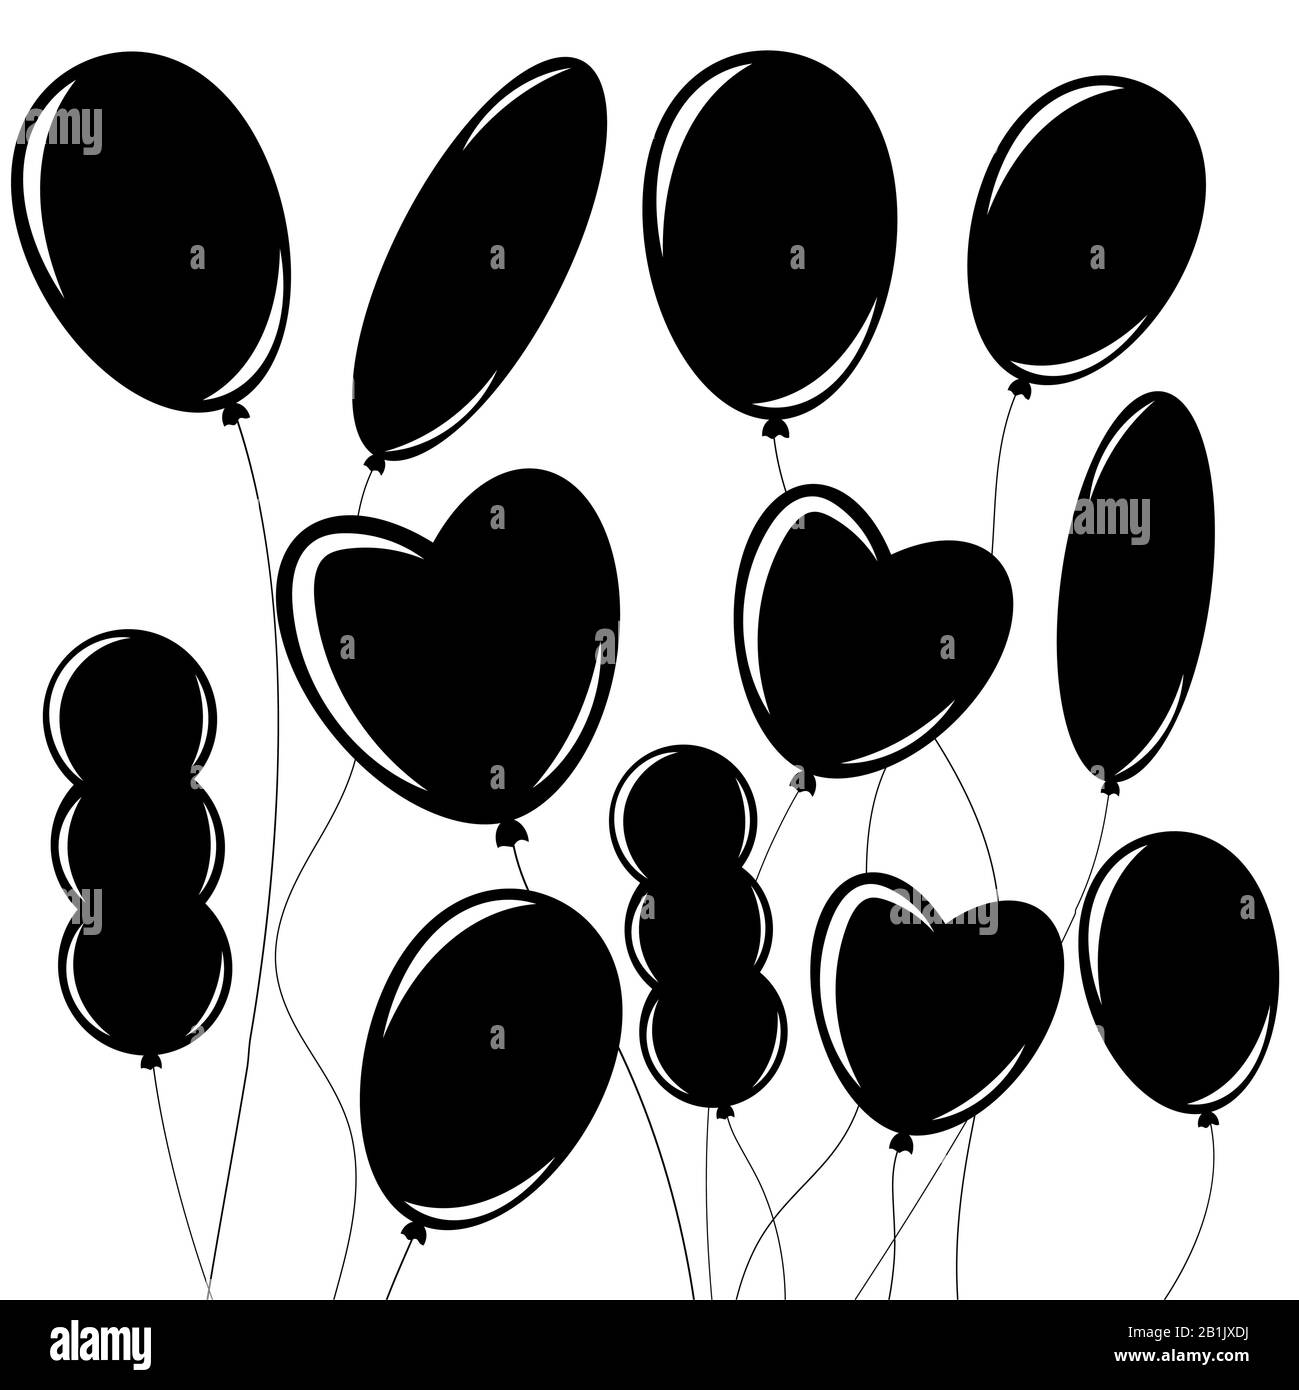 Jeu de silhouettes noires isolées plates de ballons sur cordes. Design simple sur fond blanc Illustration de Vecteur